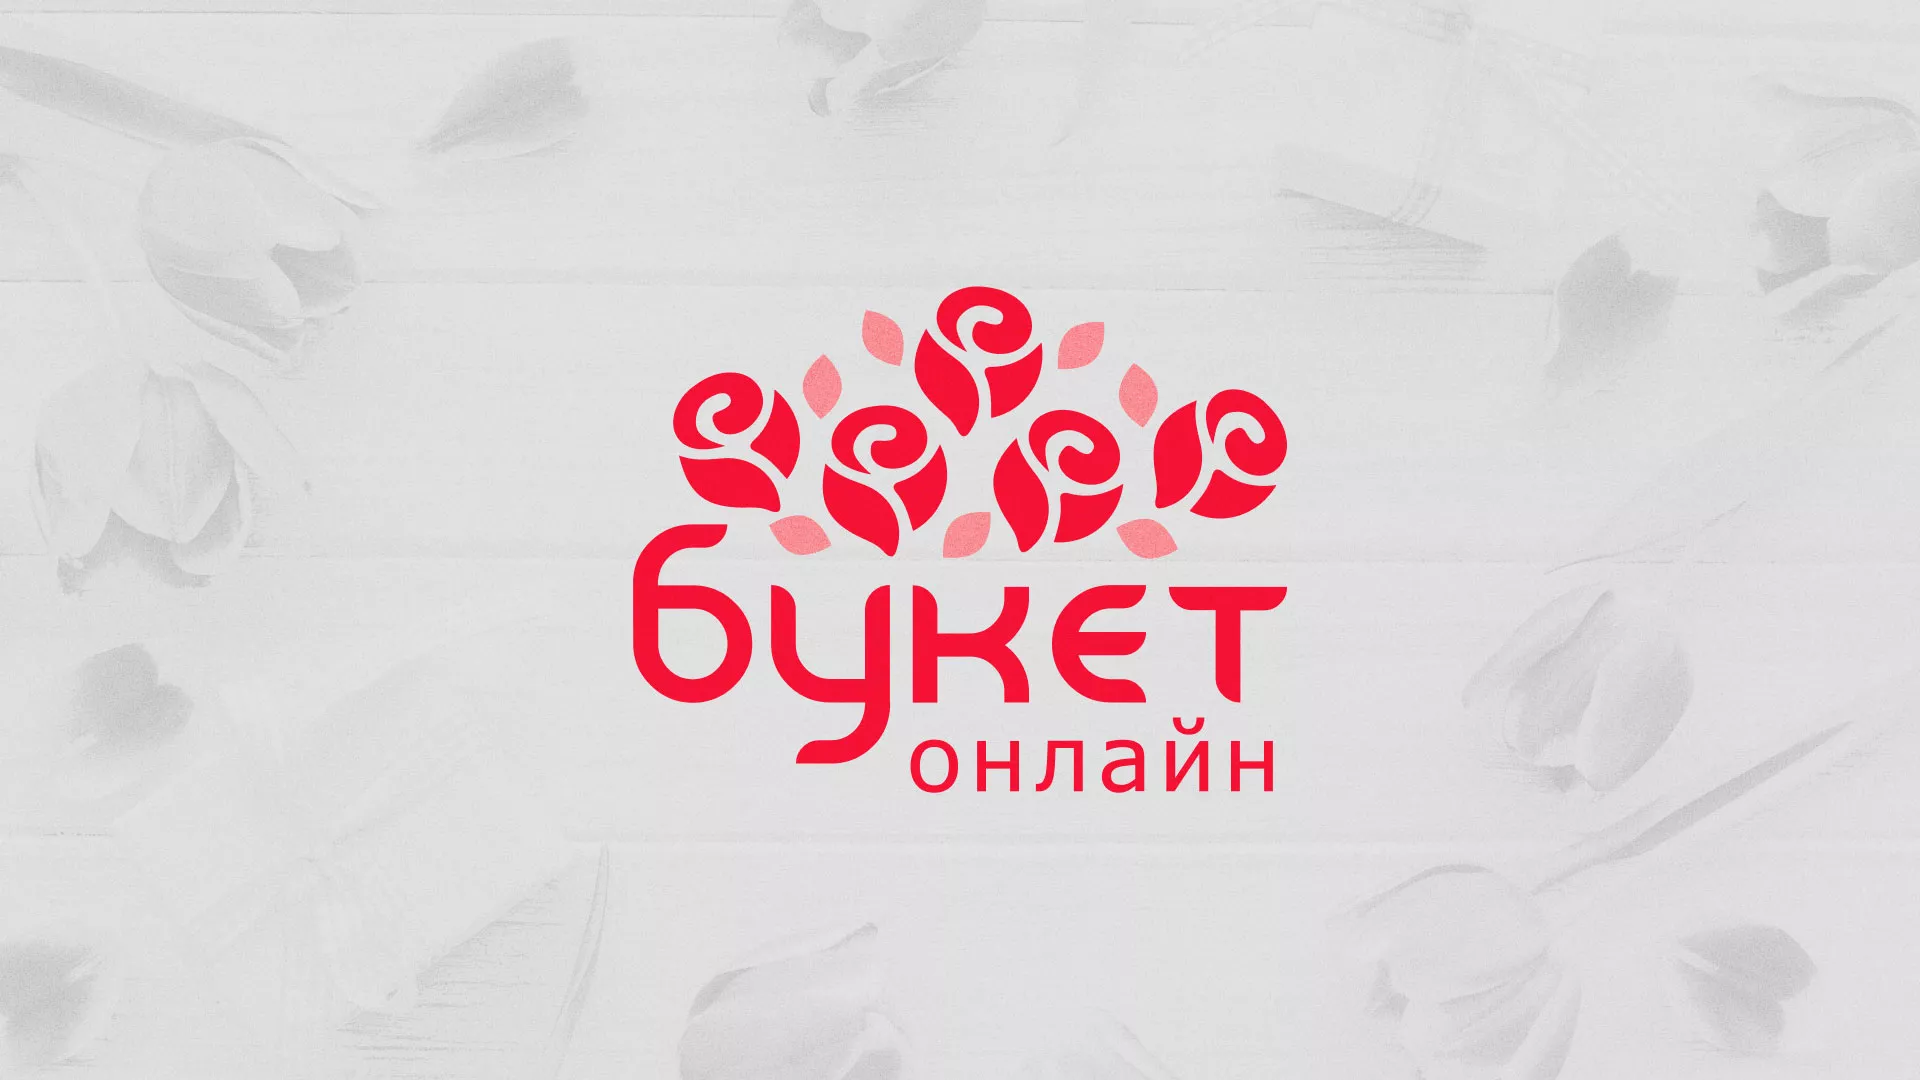 Создание интернет-магазина «Букет-онлайн» по цветам в Архангельске